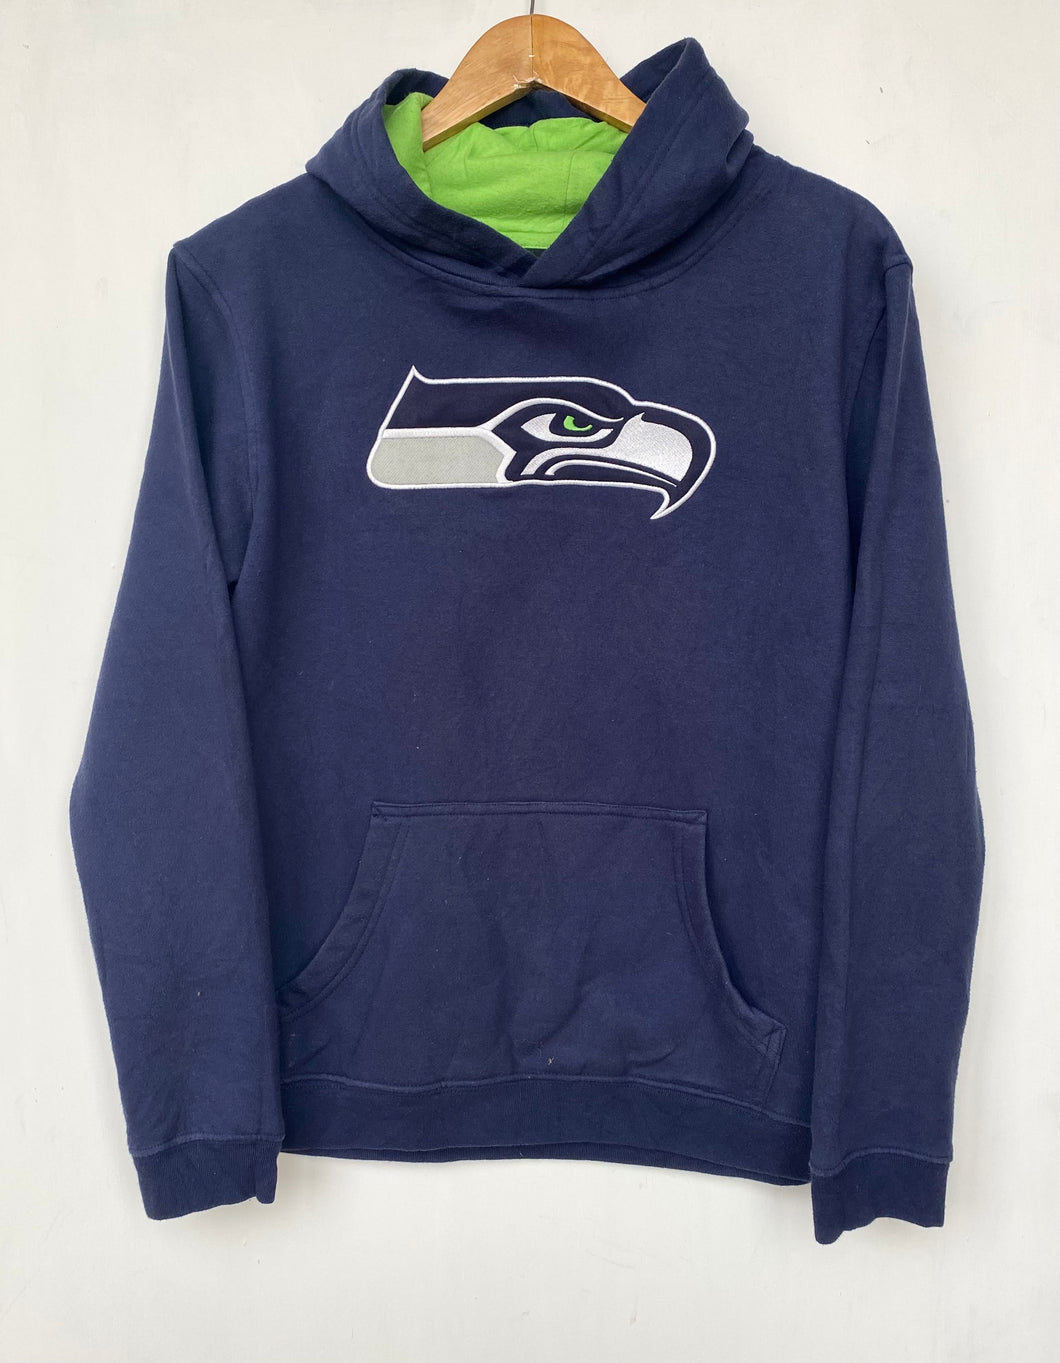 NFL Seahawks hoodie (XS)